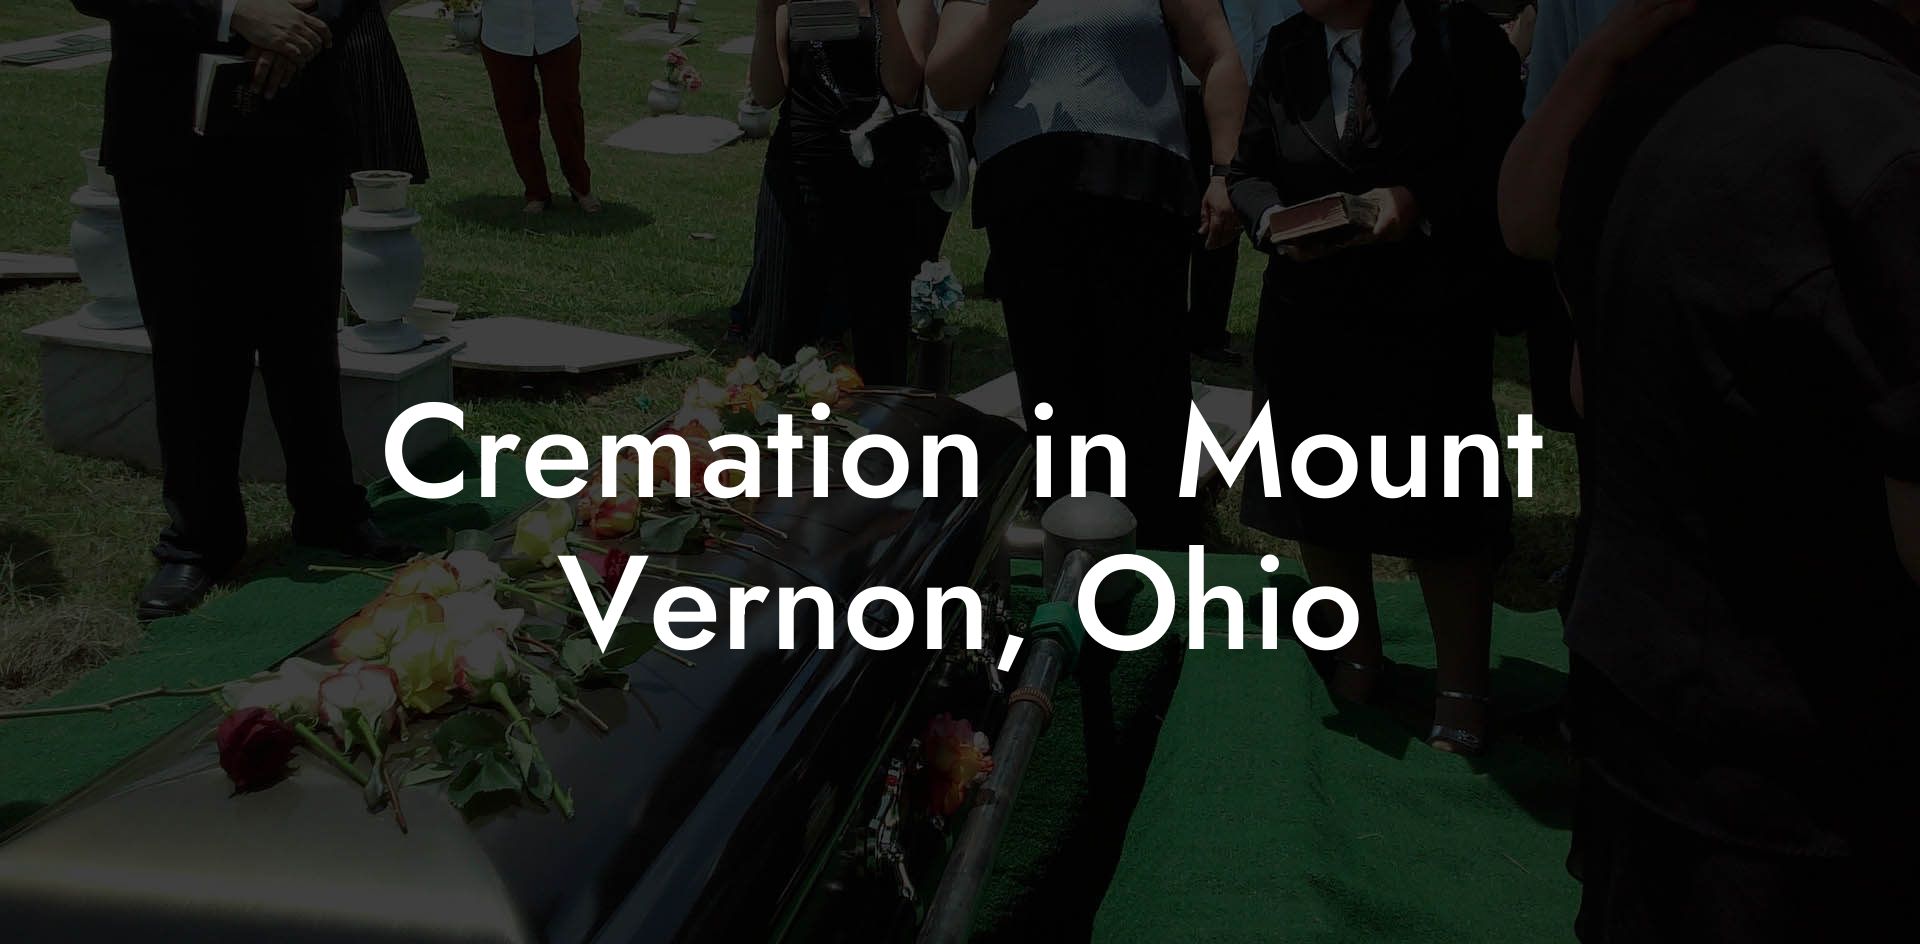 Cremation in Mount Vernon, Ohio